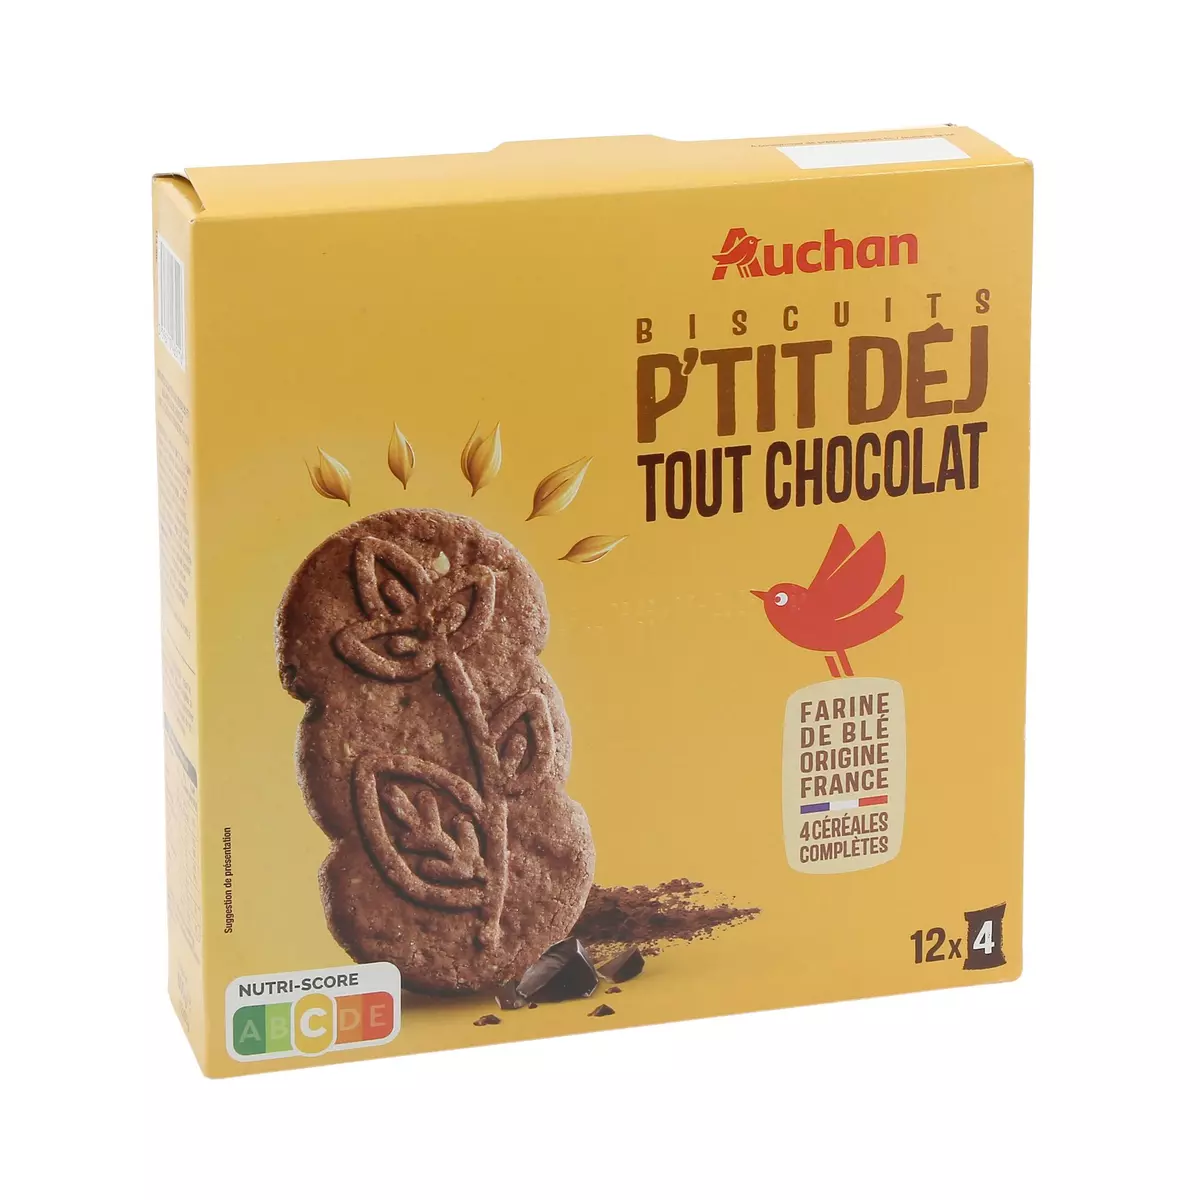 AUCHAN Biscuits p'tit déj tout chocolat 12x4 biscuits 600g